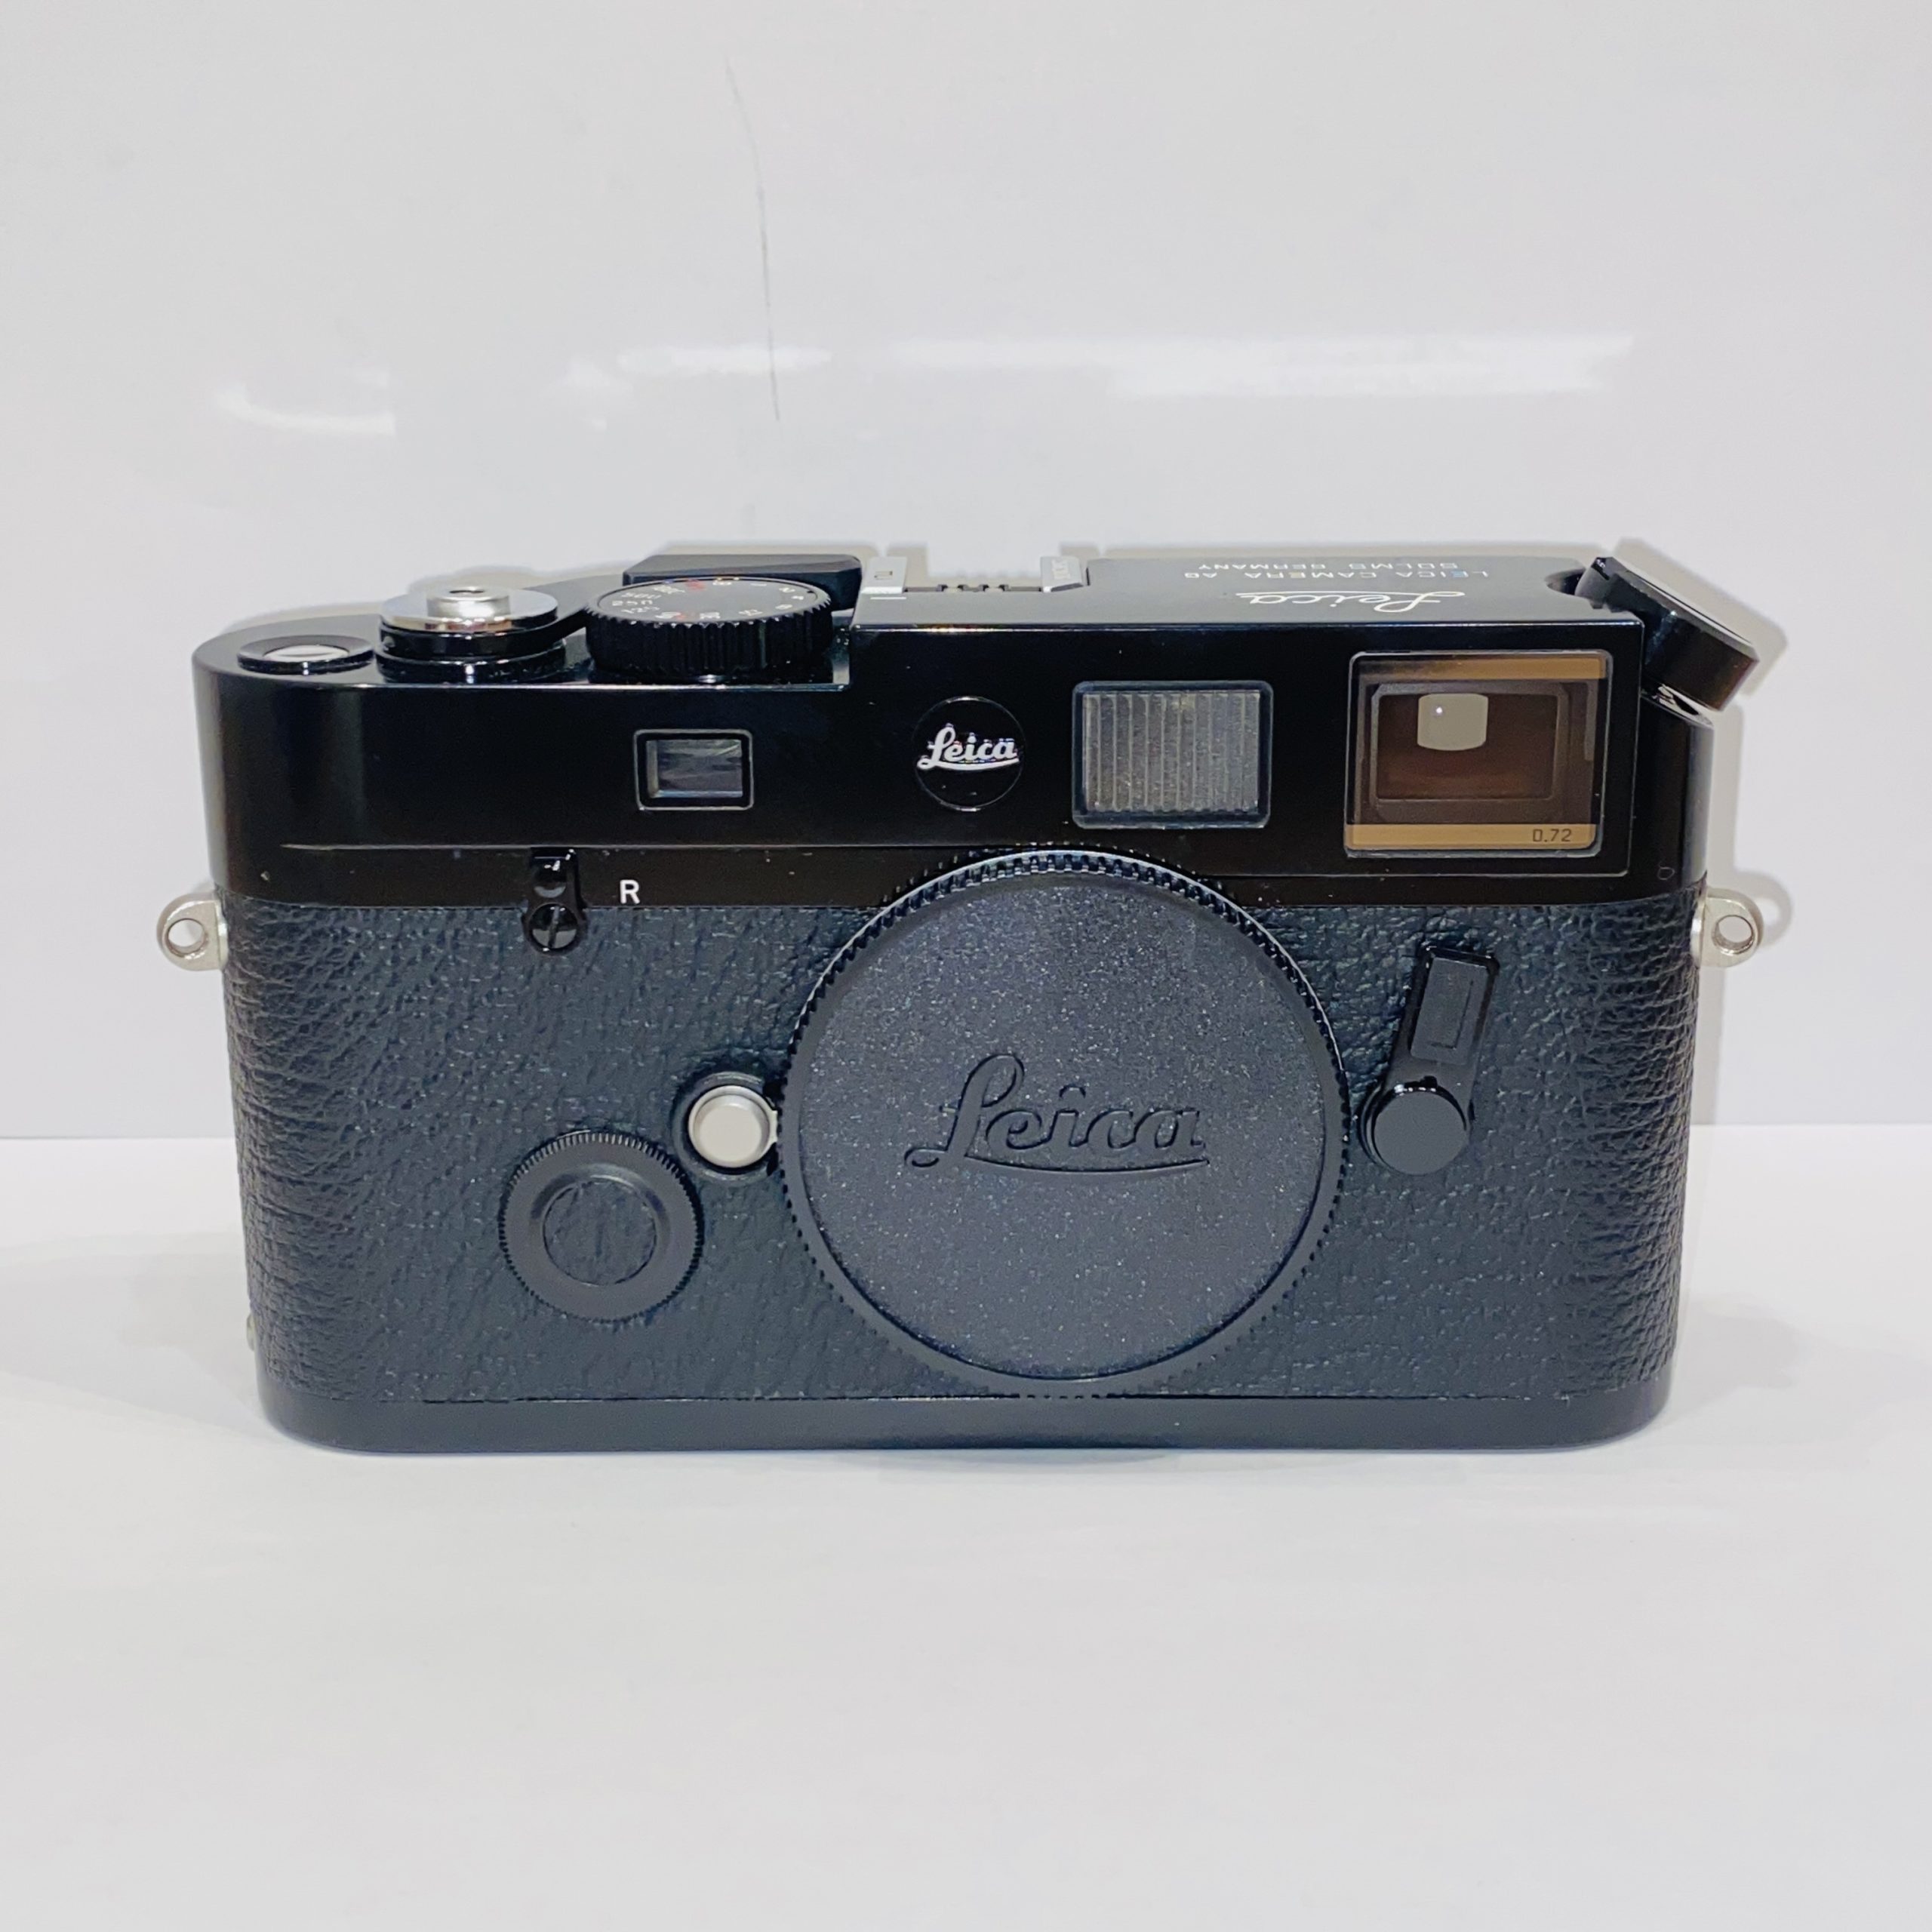 【Leica/ライカ】M6TTL 0.72 LHSAモデル (ブラックペイント) 650台限定 フィルムレンジファインダーカメラ